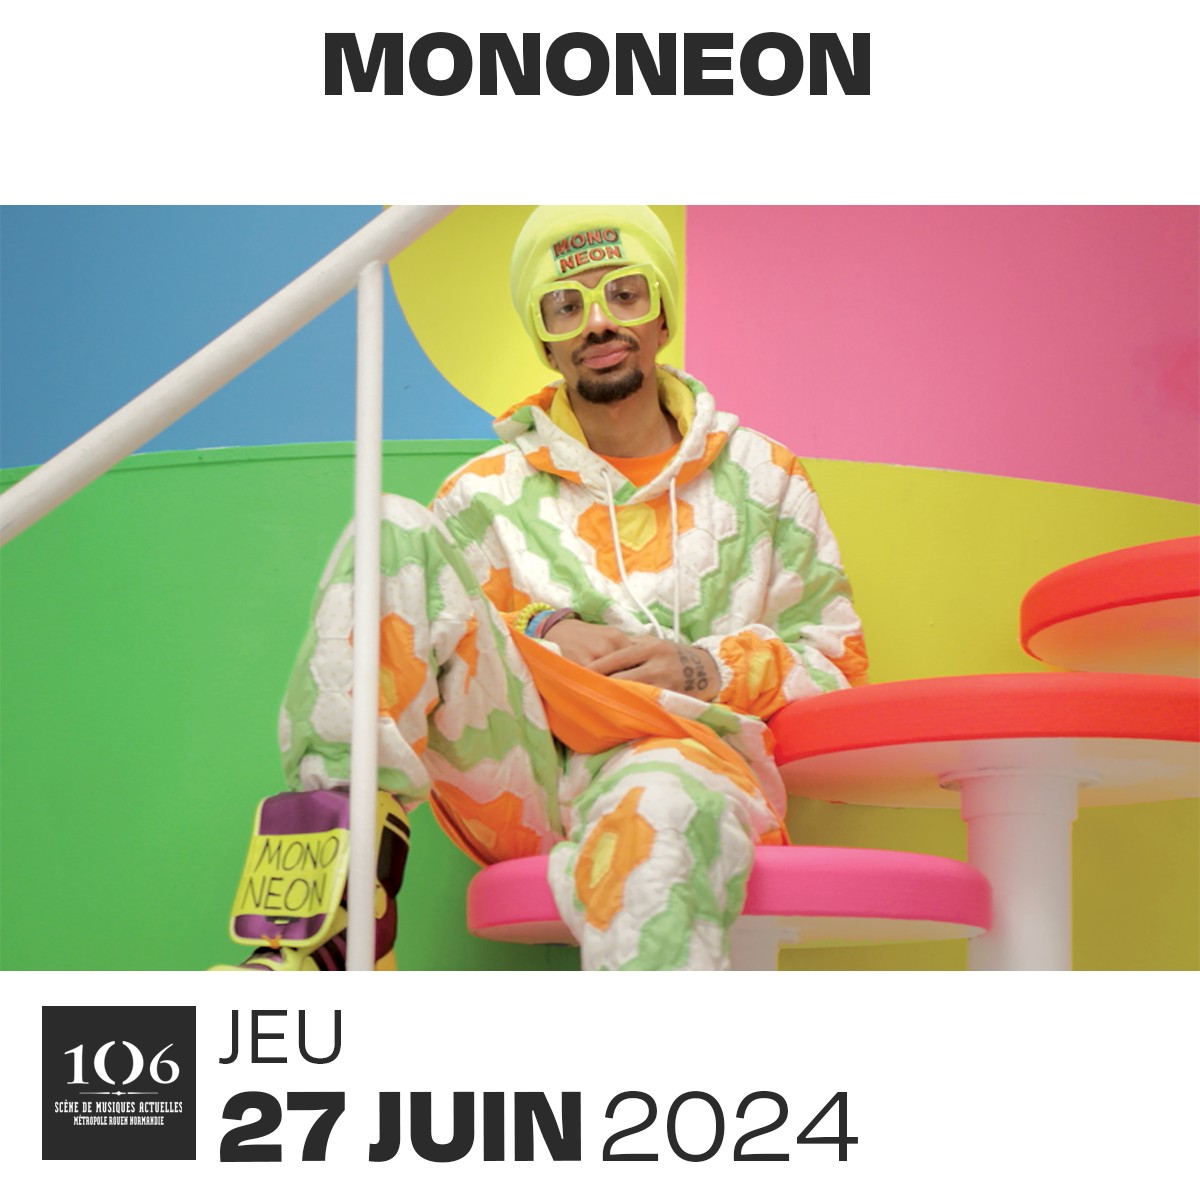 MonoNeon at Le 106 Tickets